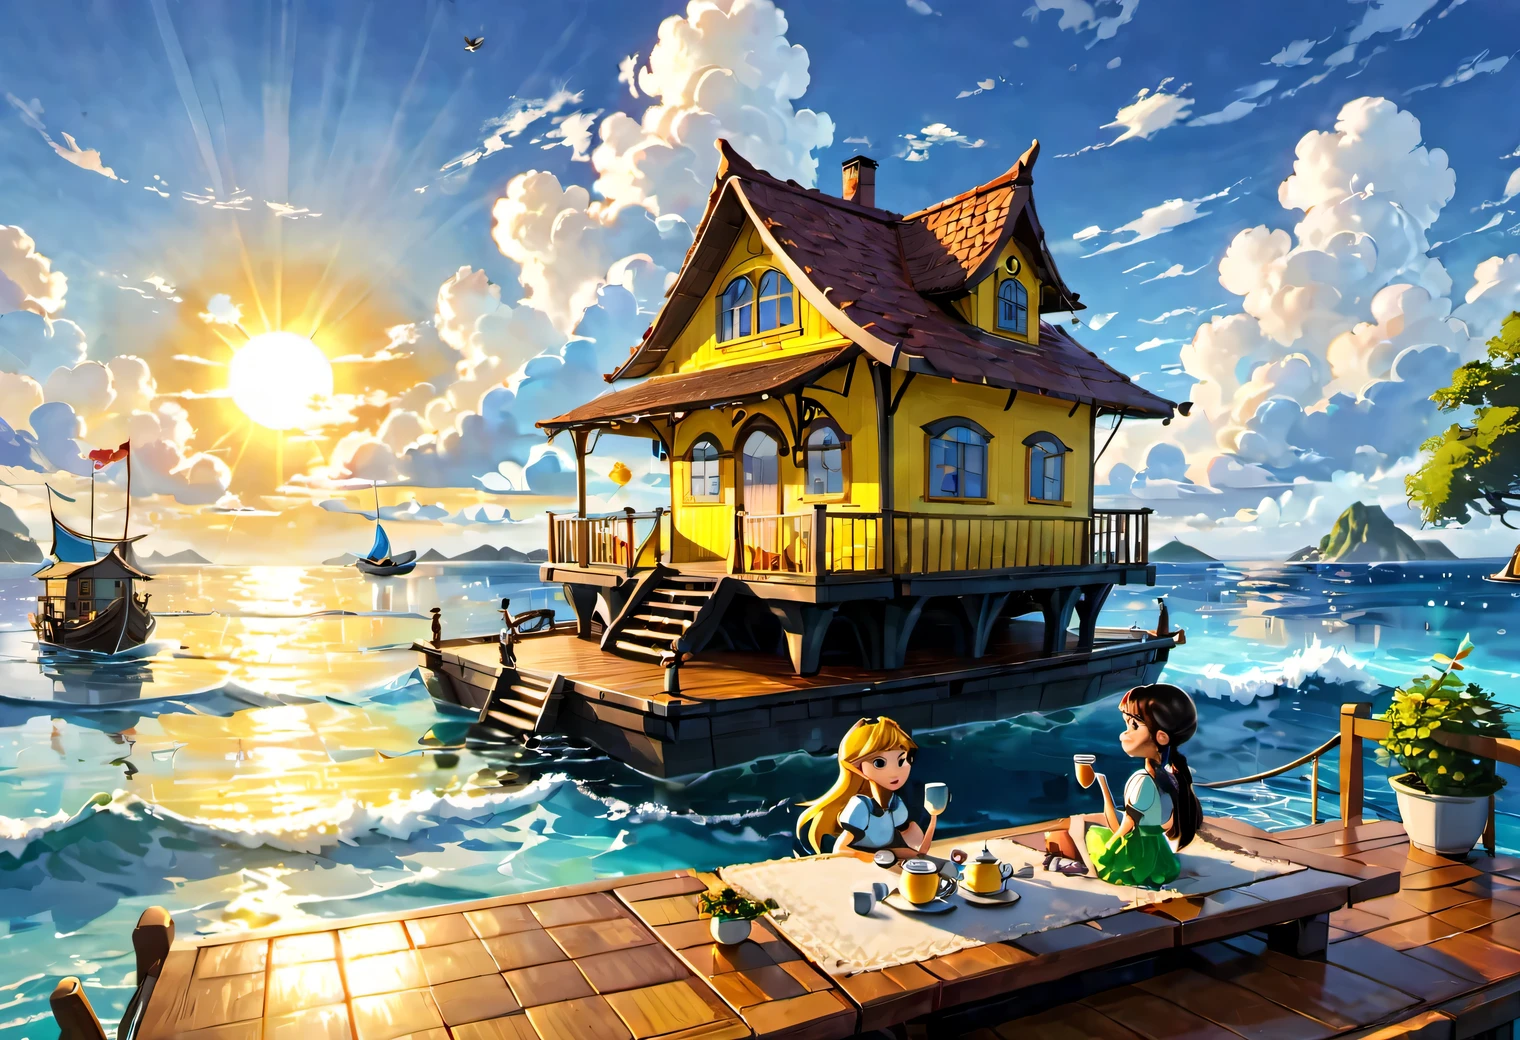 水上屋, 海上漂浮的房子, , 漂浮在海上的大木筏上的房子, 一座巨大而美麗的童話般的房子漂浮在蔚藍的海浪上, 周圍美麗的景色, 白雲, 黃色太陽, 在房子的陽台上，一個女孩和一個男孩坐在桌子旁喝茶, 高品質, 高解析度, 大师之作, 傑作, 清除, 32k, 卡通風格, 皮克斯